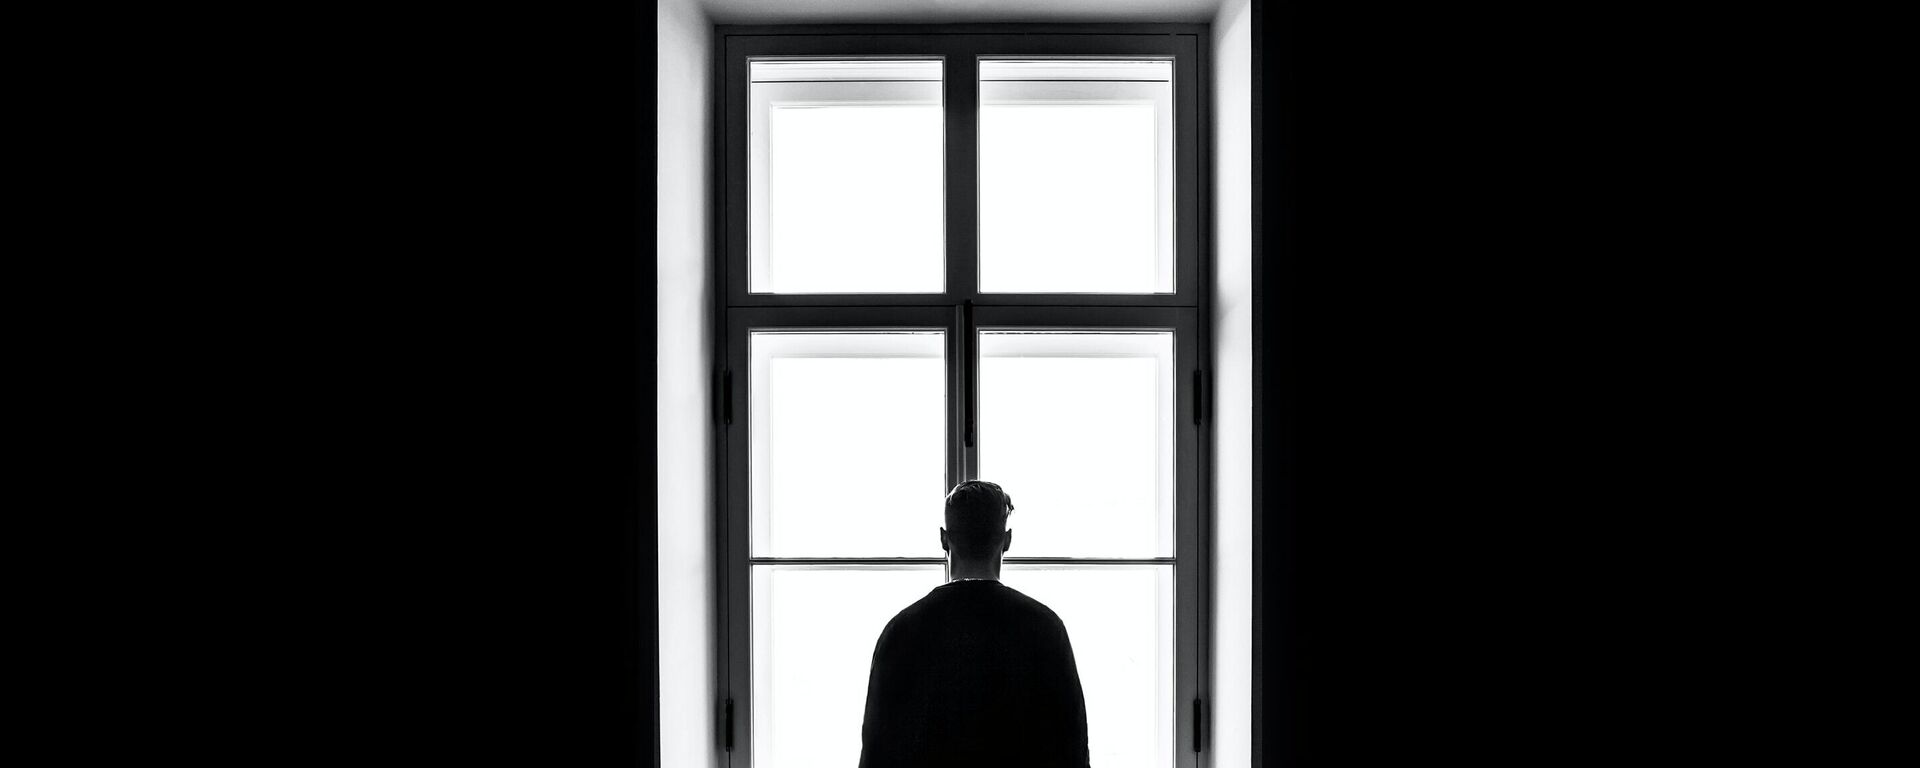 Una persona delante de una ventana en la oscuridad - Sputnik Mundo, 1920, 10.10.2021